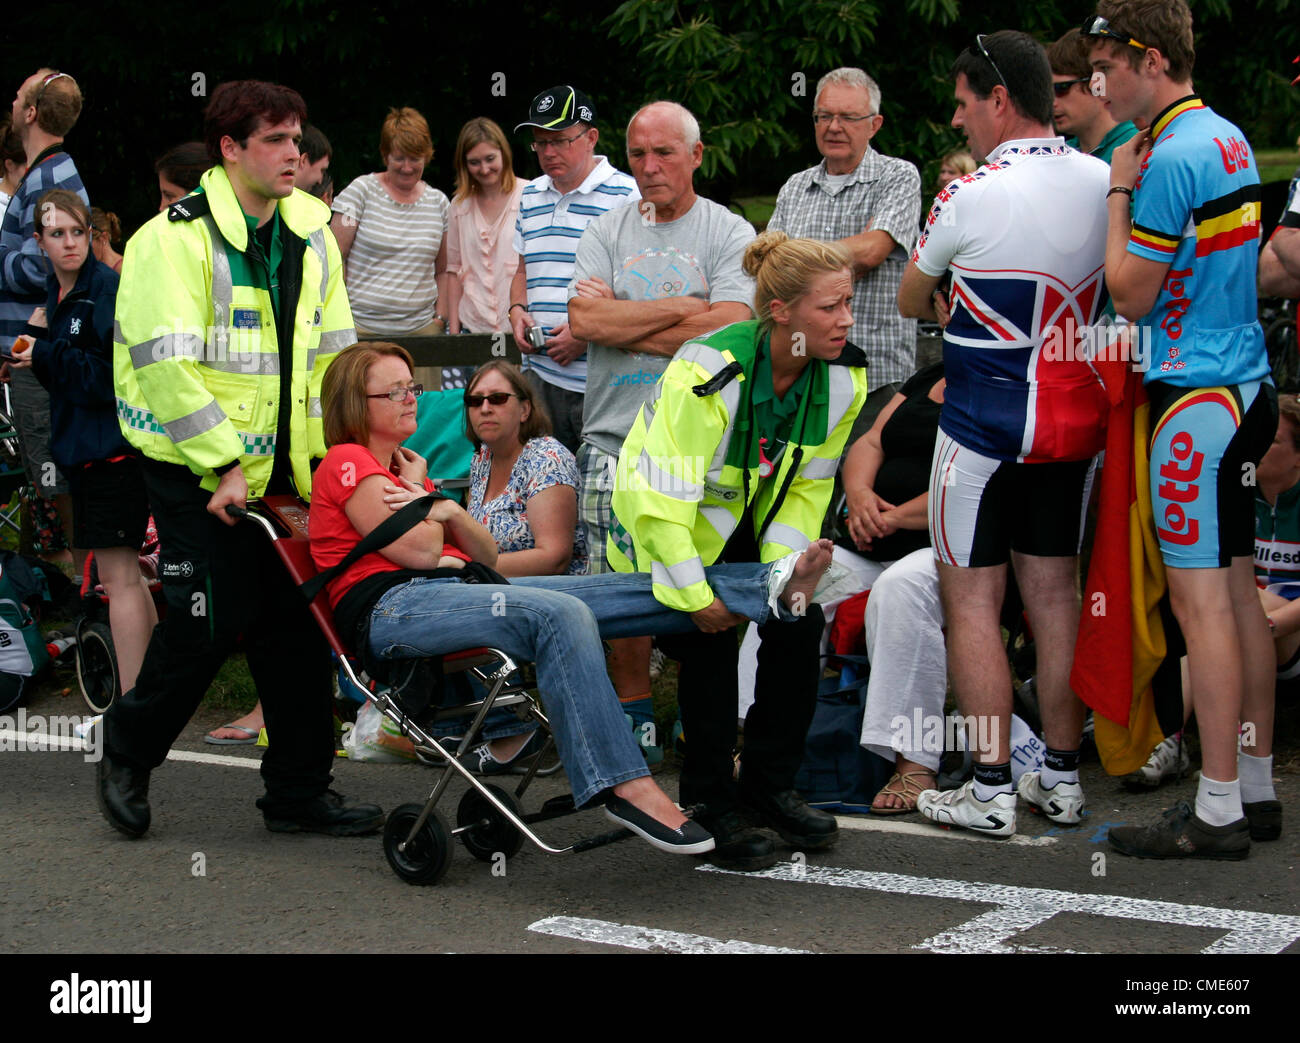 Un espectador ha tenido su pie aplastado por un vehículo mientras se ve Team GB ciclistas que toman parte en la carrera olímpica en Box Hill en Surrey que asistieron a una gran multitud que apoyaban ellos el 28 de julio de 2012 destinada a ganar la medalla de oro. Fue trasladada a recibir tratamiento por St Johns ambulancia. Foto de stock